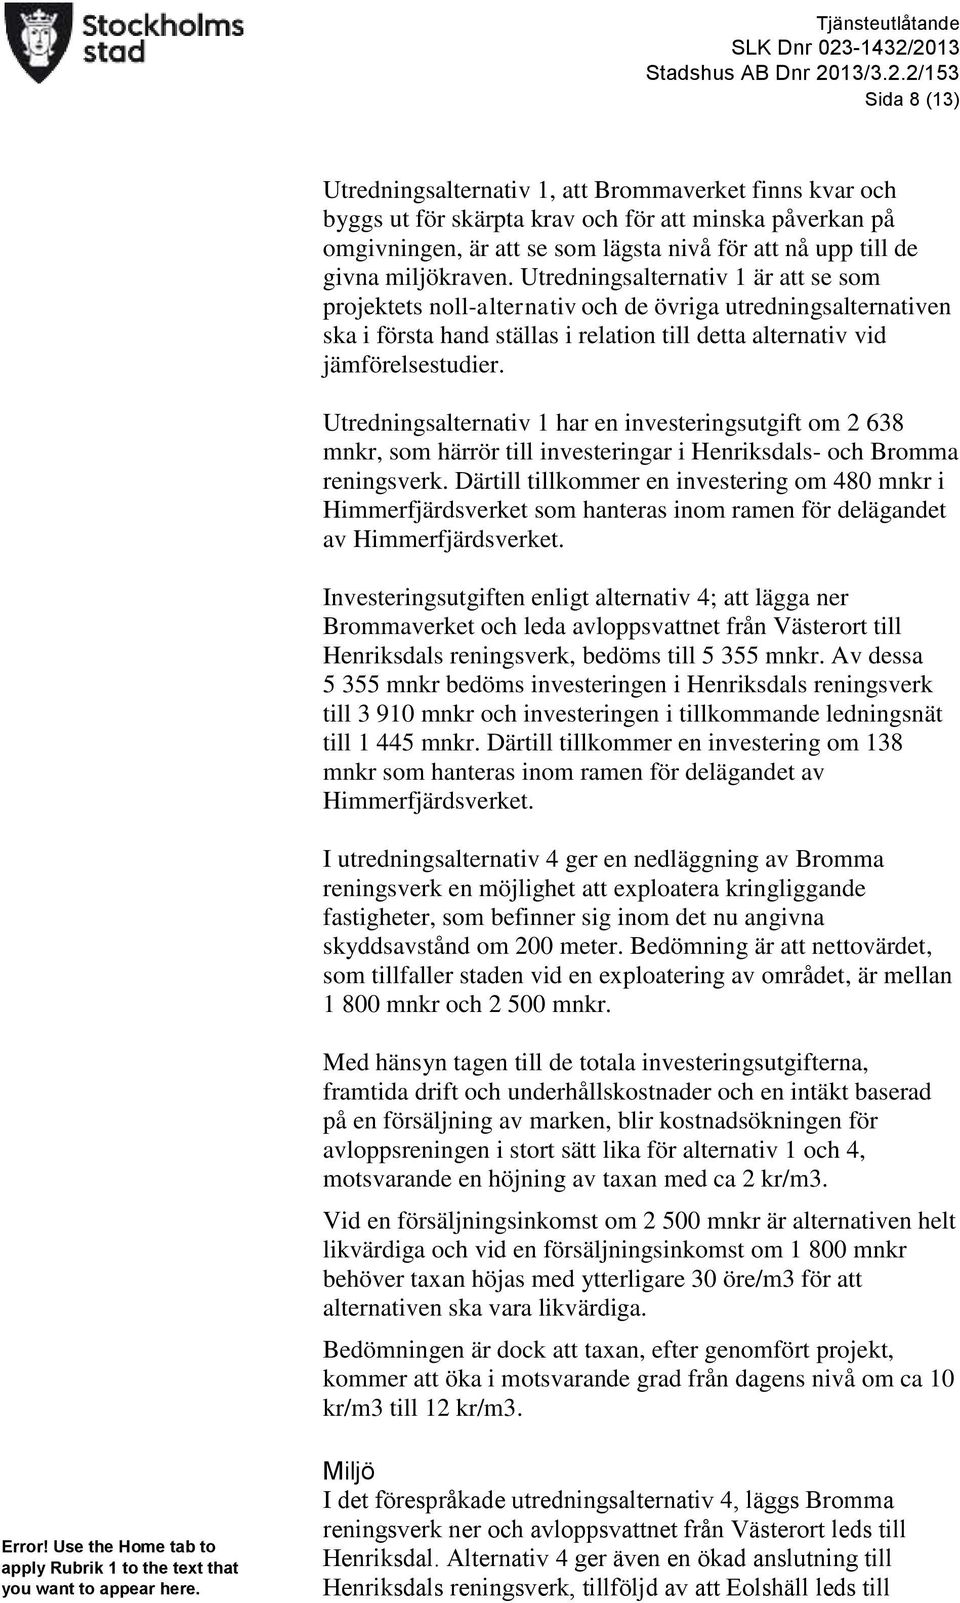 2013 Stadshus AB Dnr 2013/3.2.2/153 Sida 8 (13) Utredningsalternativ 1, att Brommaverket finns kvar och byggs ut för skärpta krav och för att minska påverkan på omgivningen, är att se som lägsta nivå